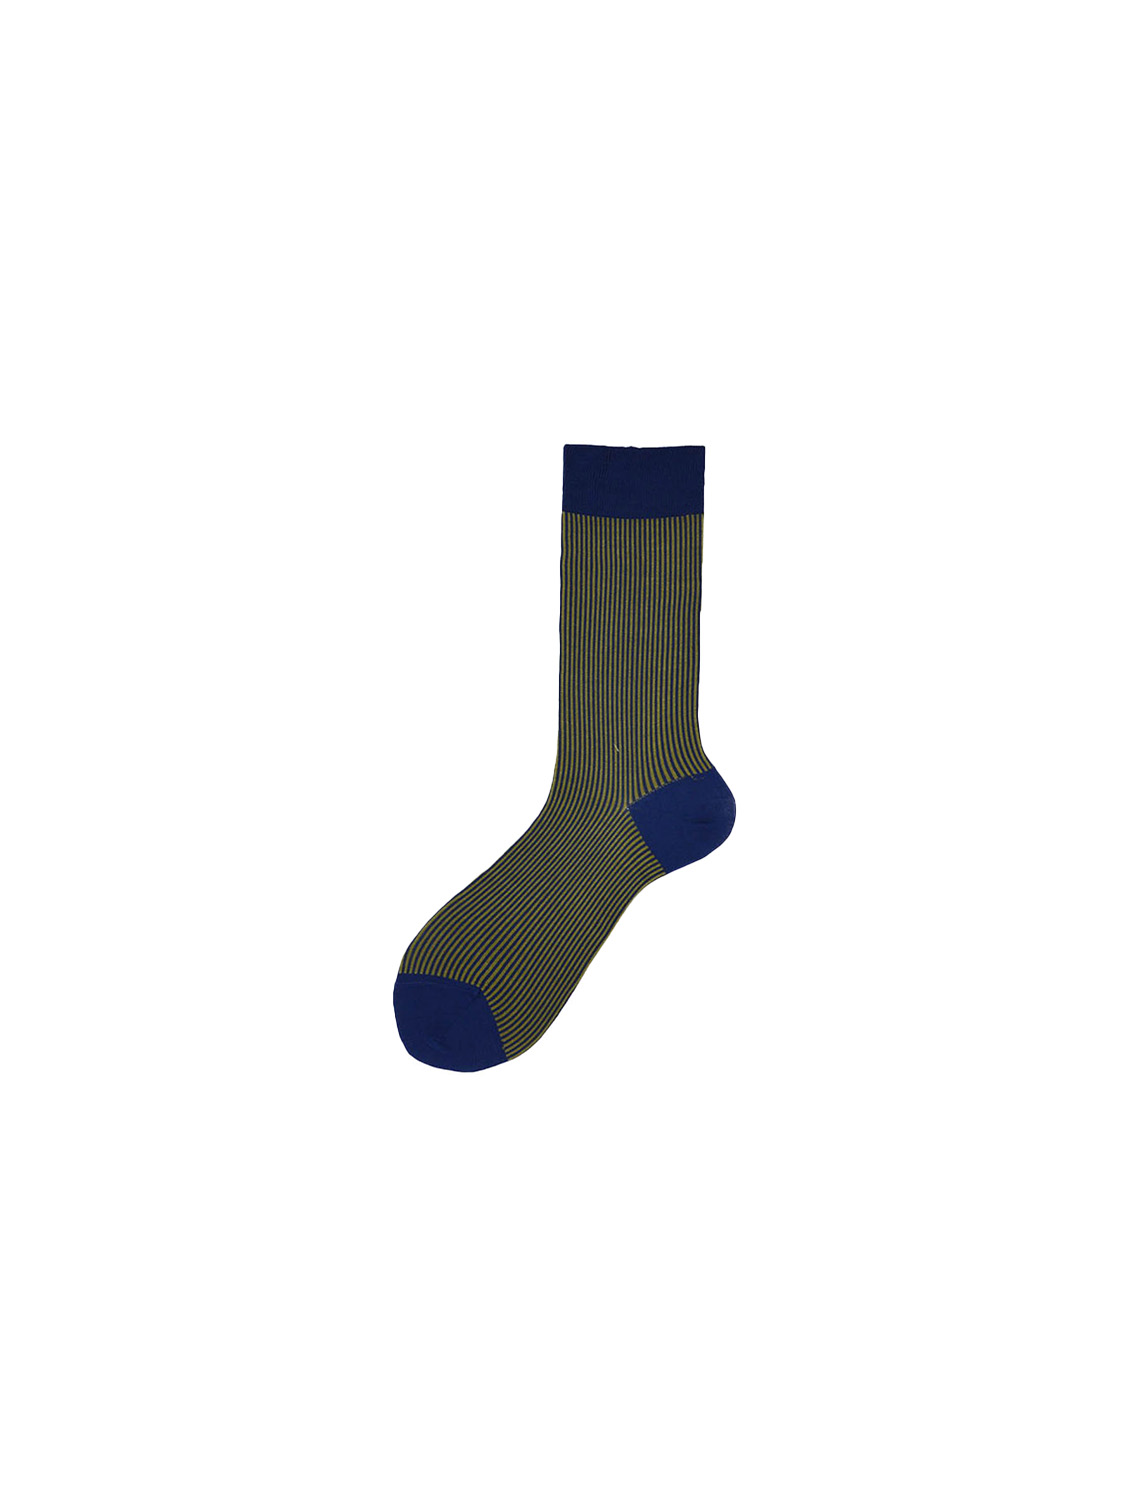 Alto Max – Kurze Baumwoll-Socken mit Muster   marine Taille unique